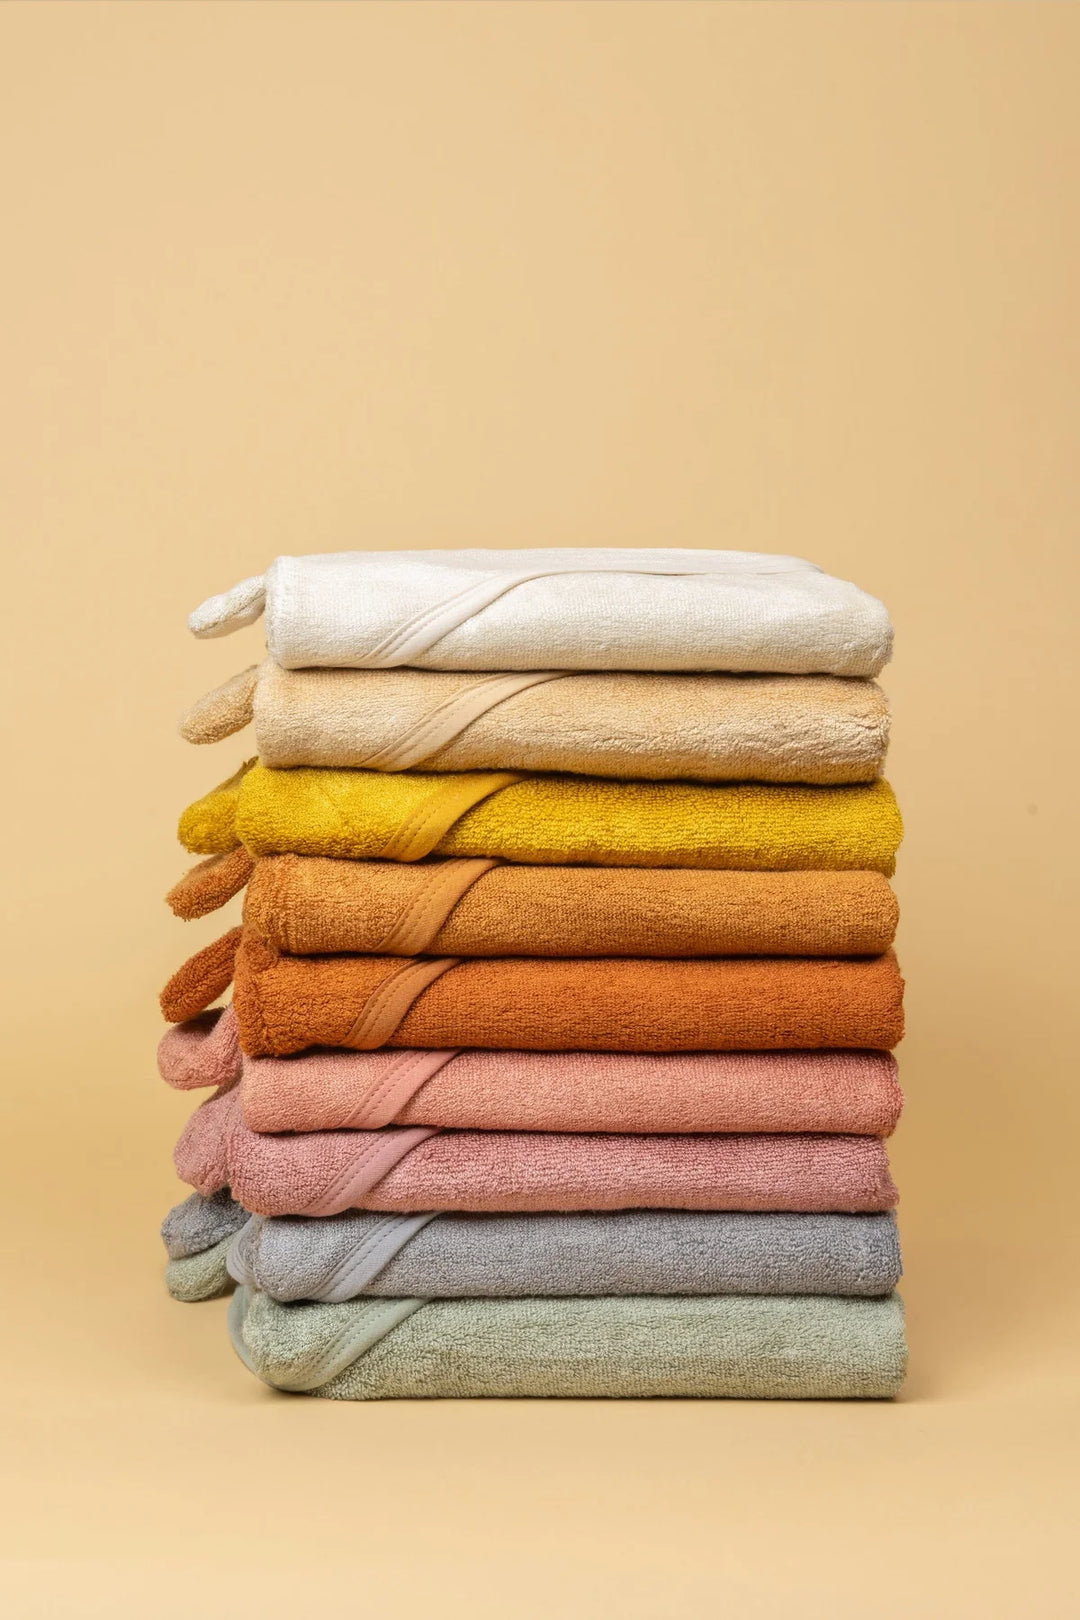 Kiin Bamboo Cotton Hooded Towel